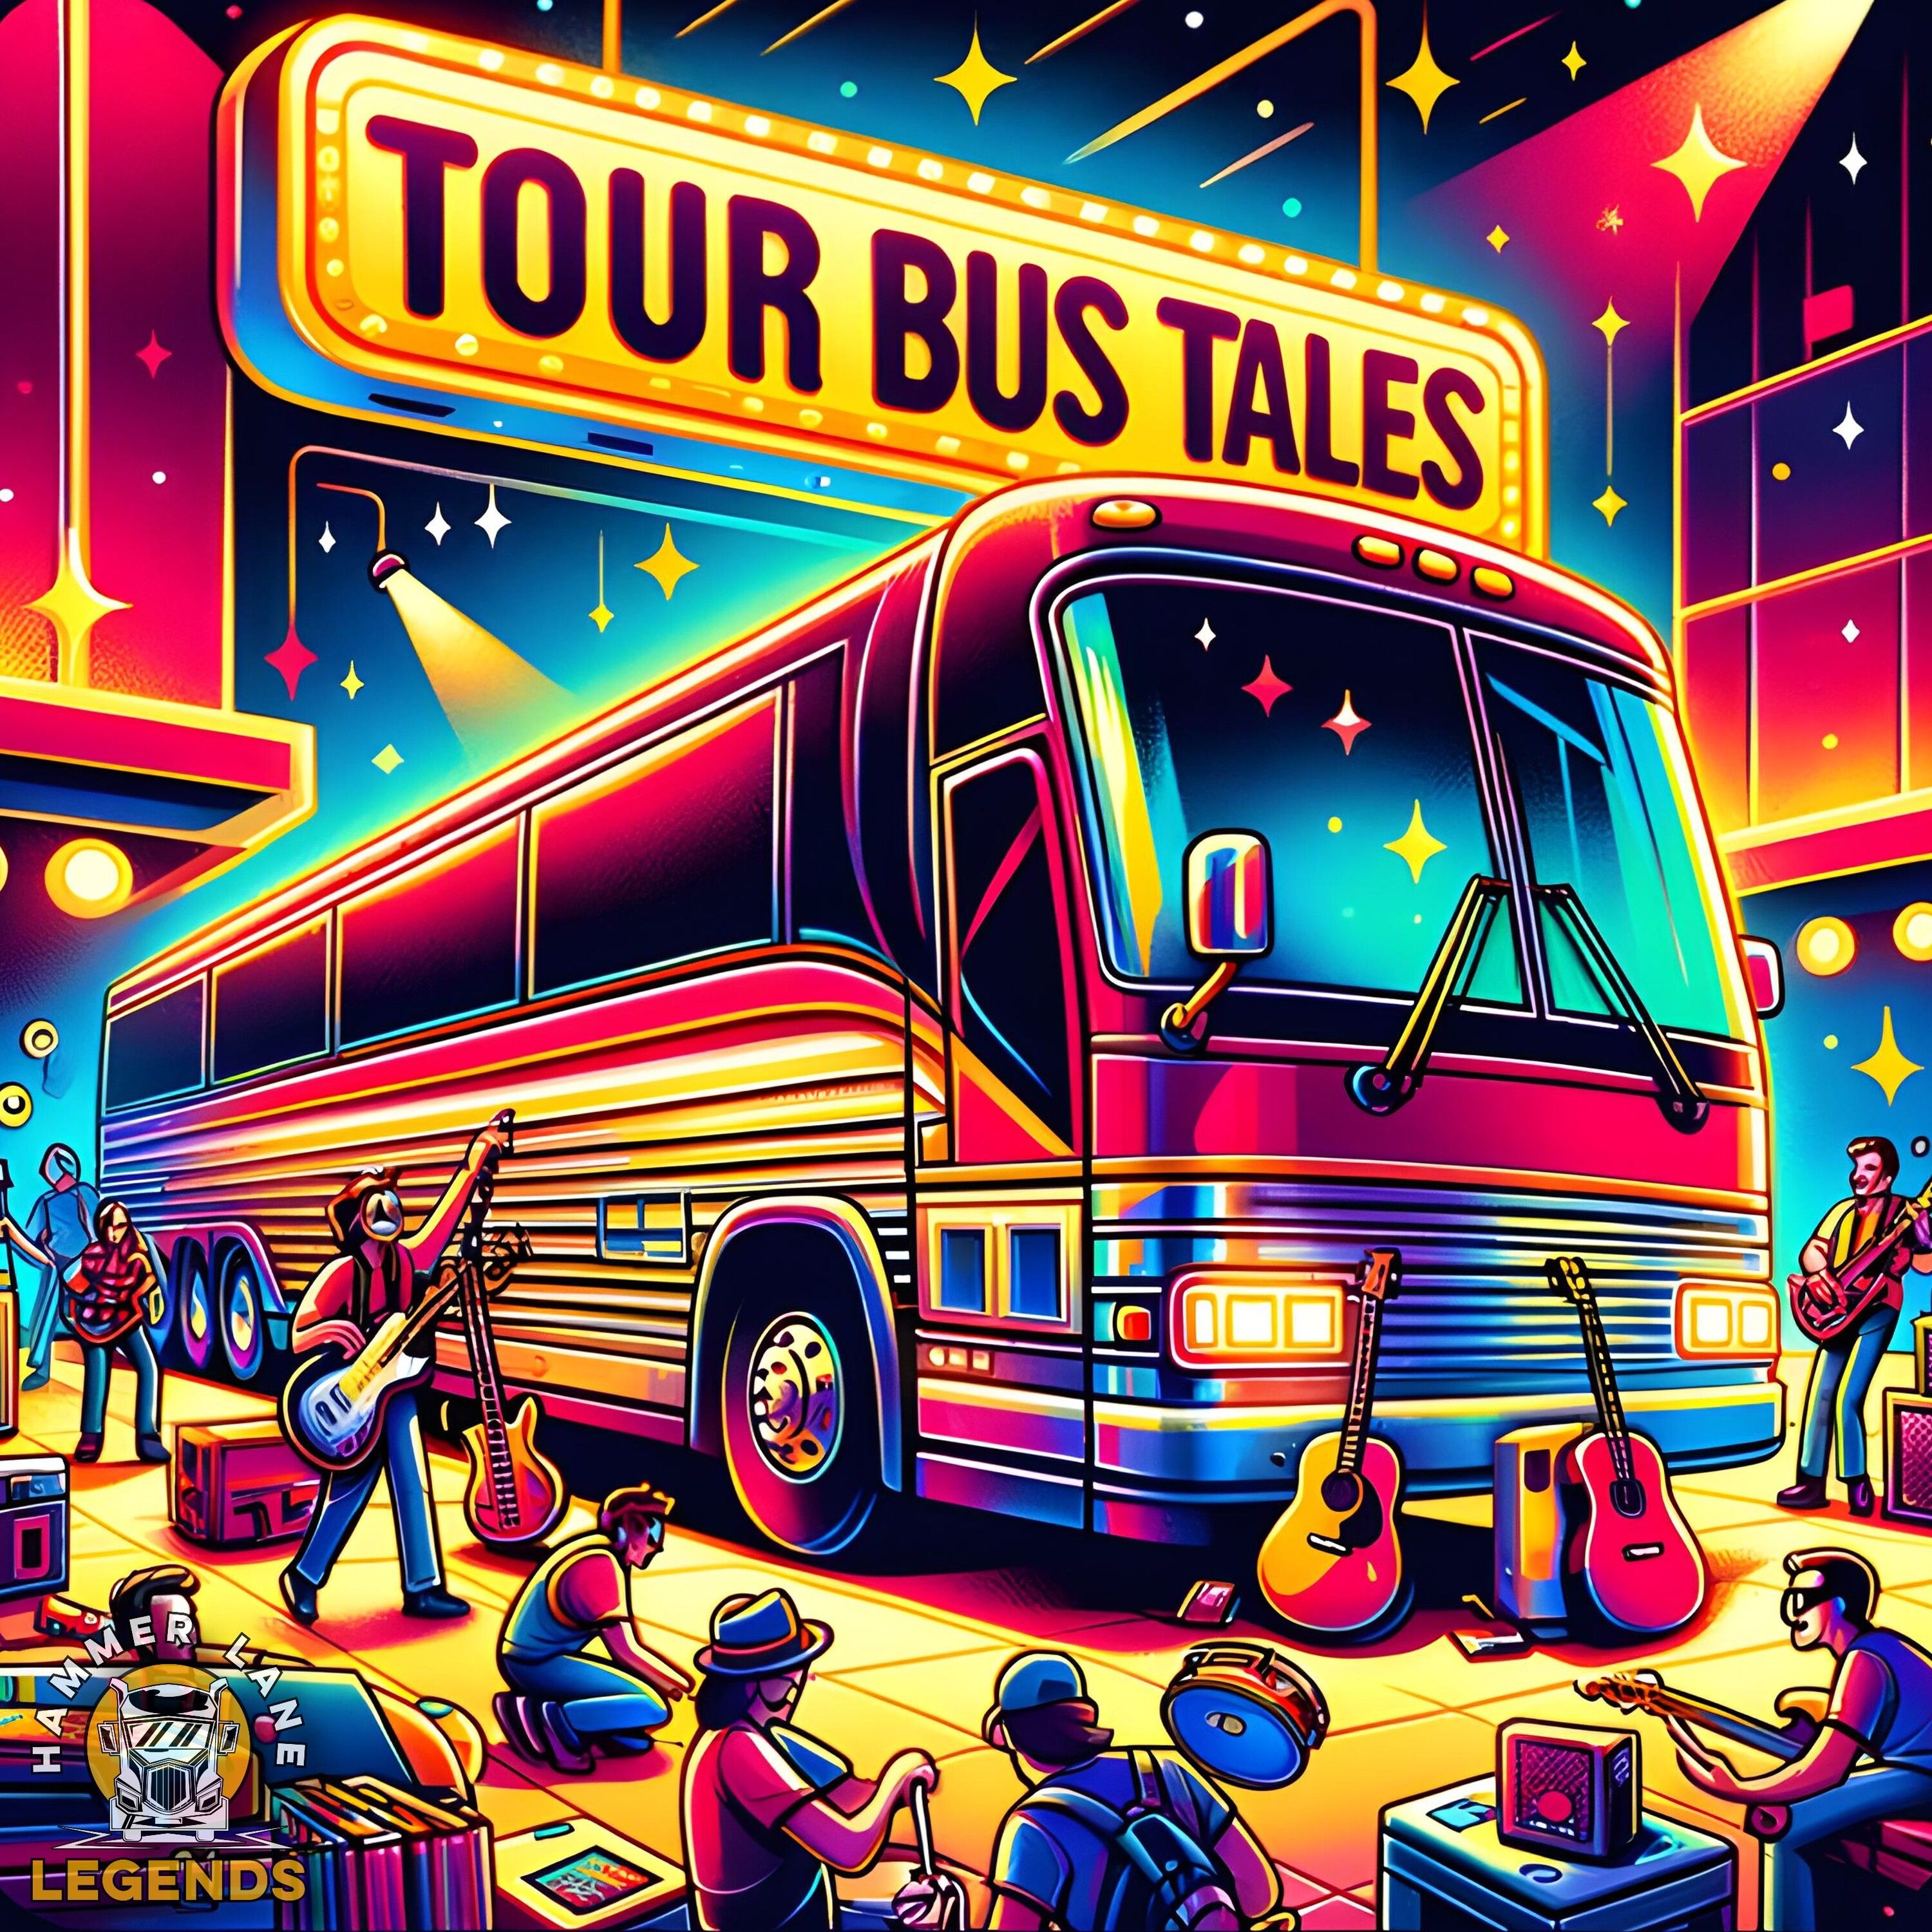 192: Tour Bus Tales